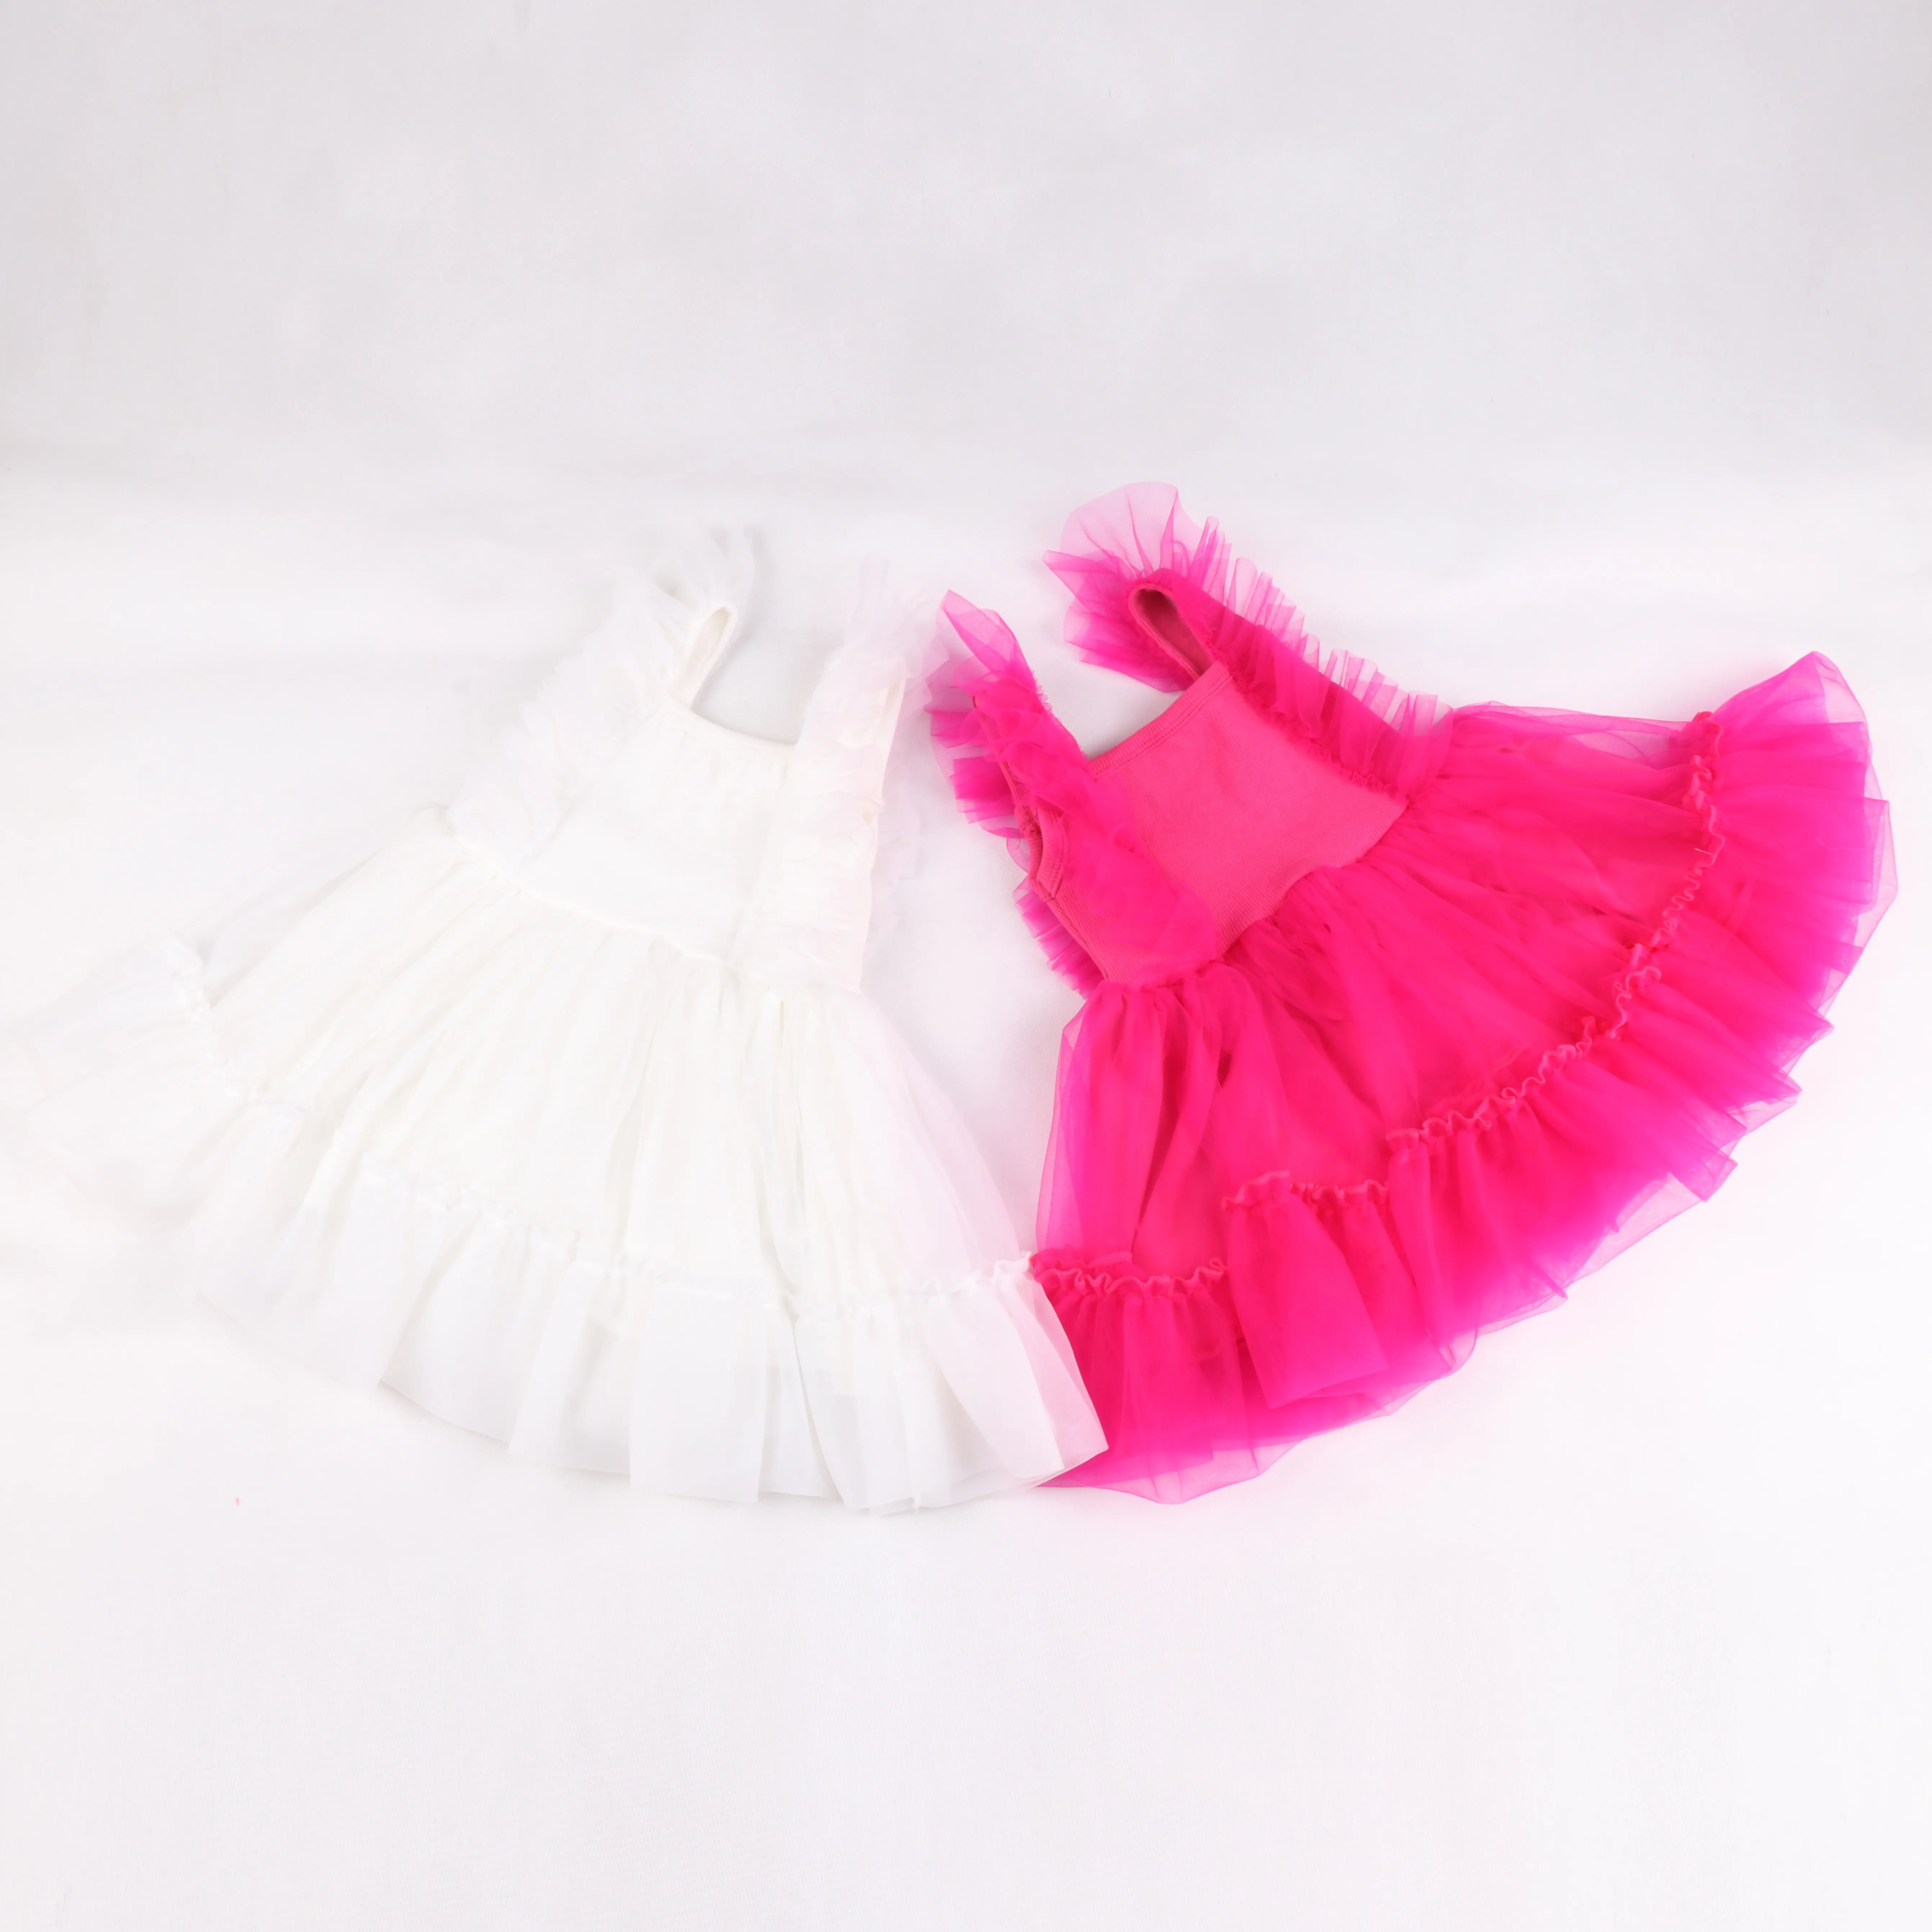 Prinzessin Mädchen Mode kurzes Kleid Kinder kleidung für Mädchen Pink Tutu Party kleid lässig Chiffon Kleid